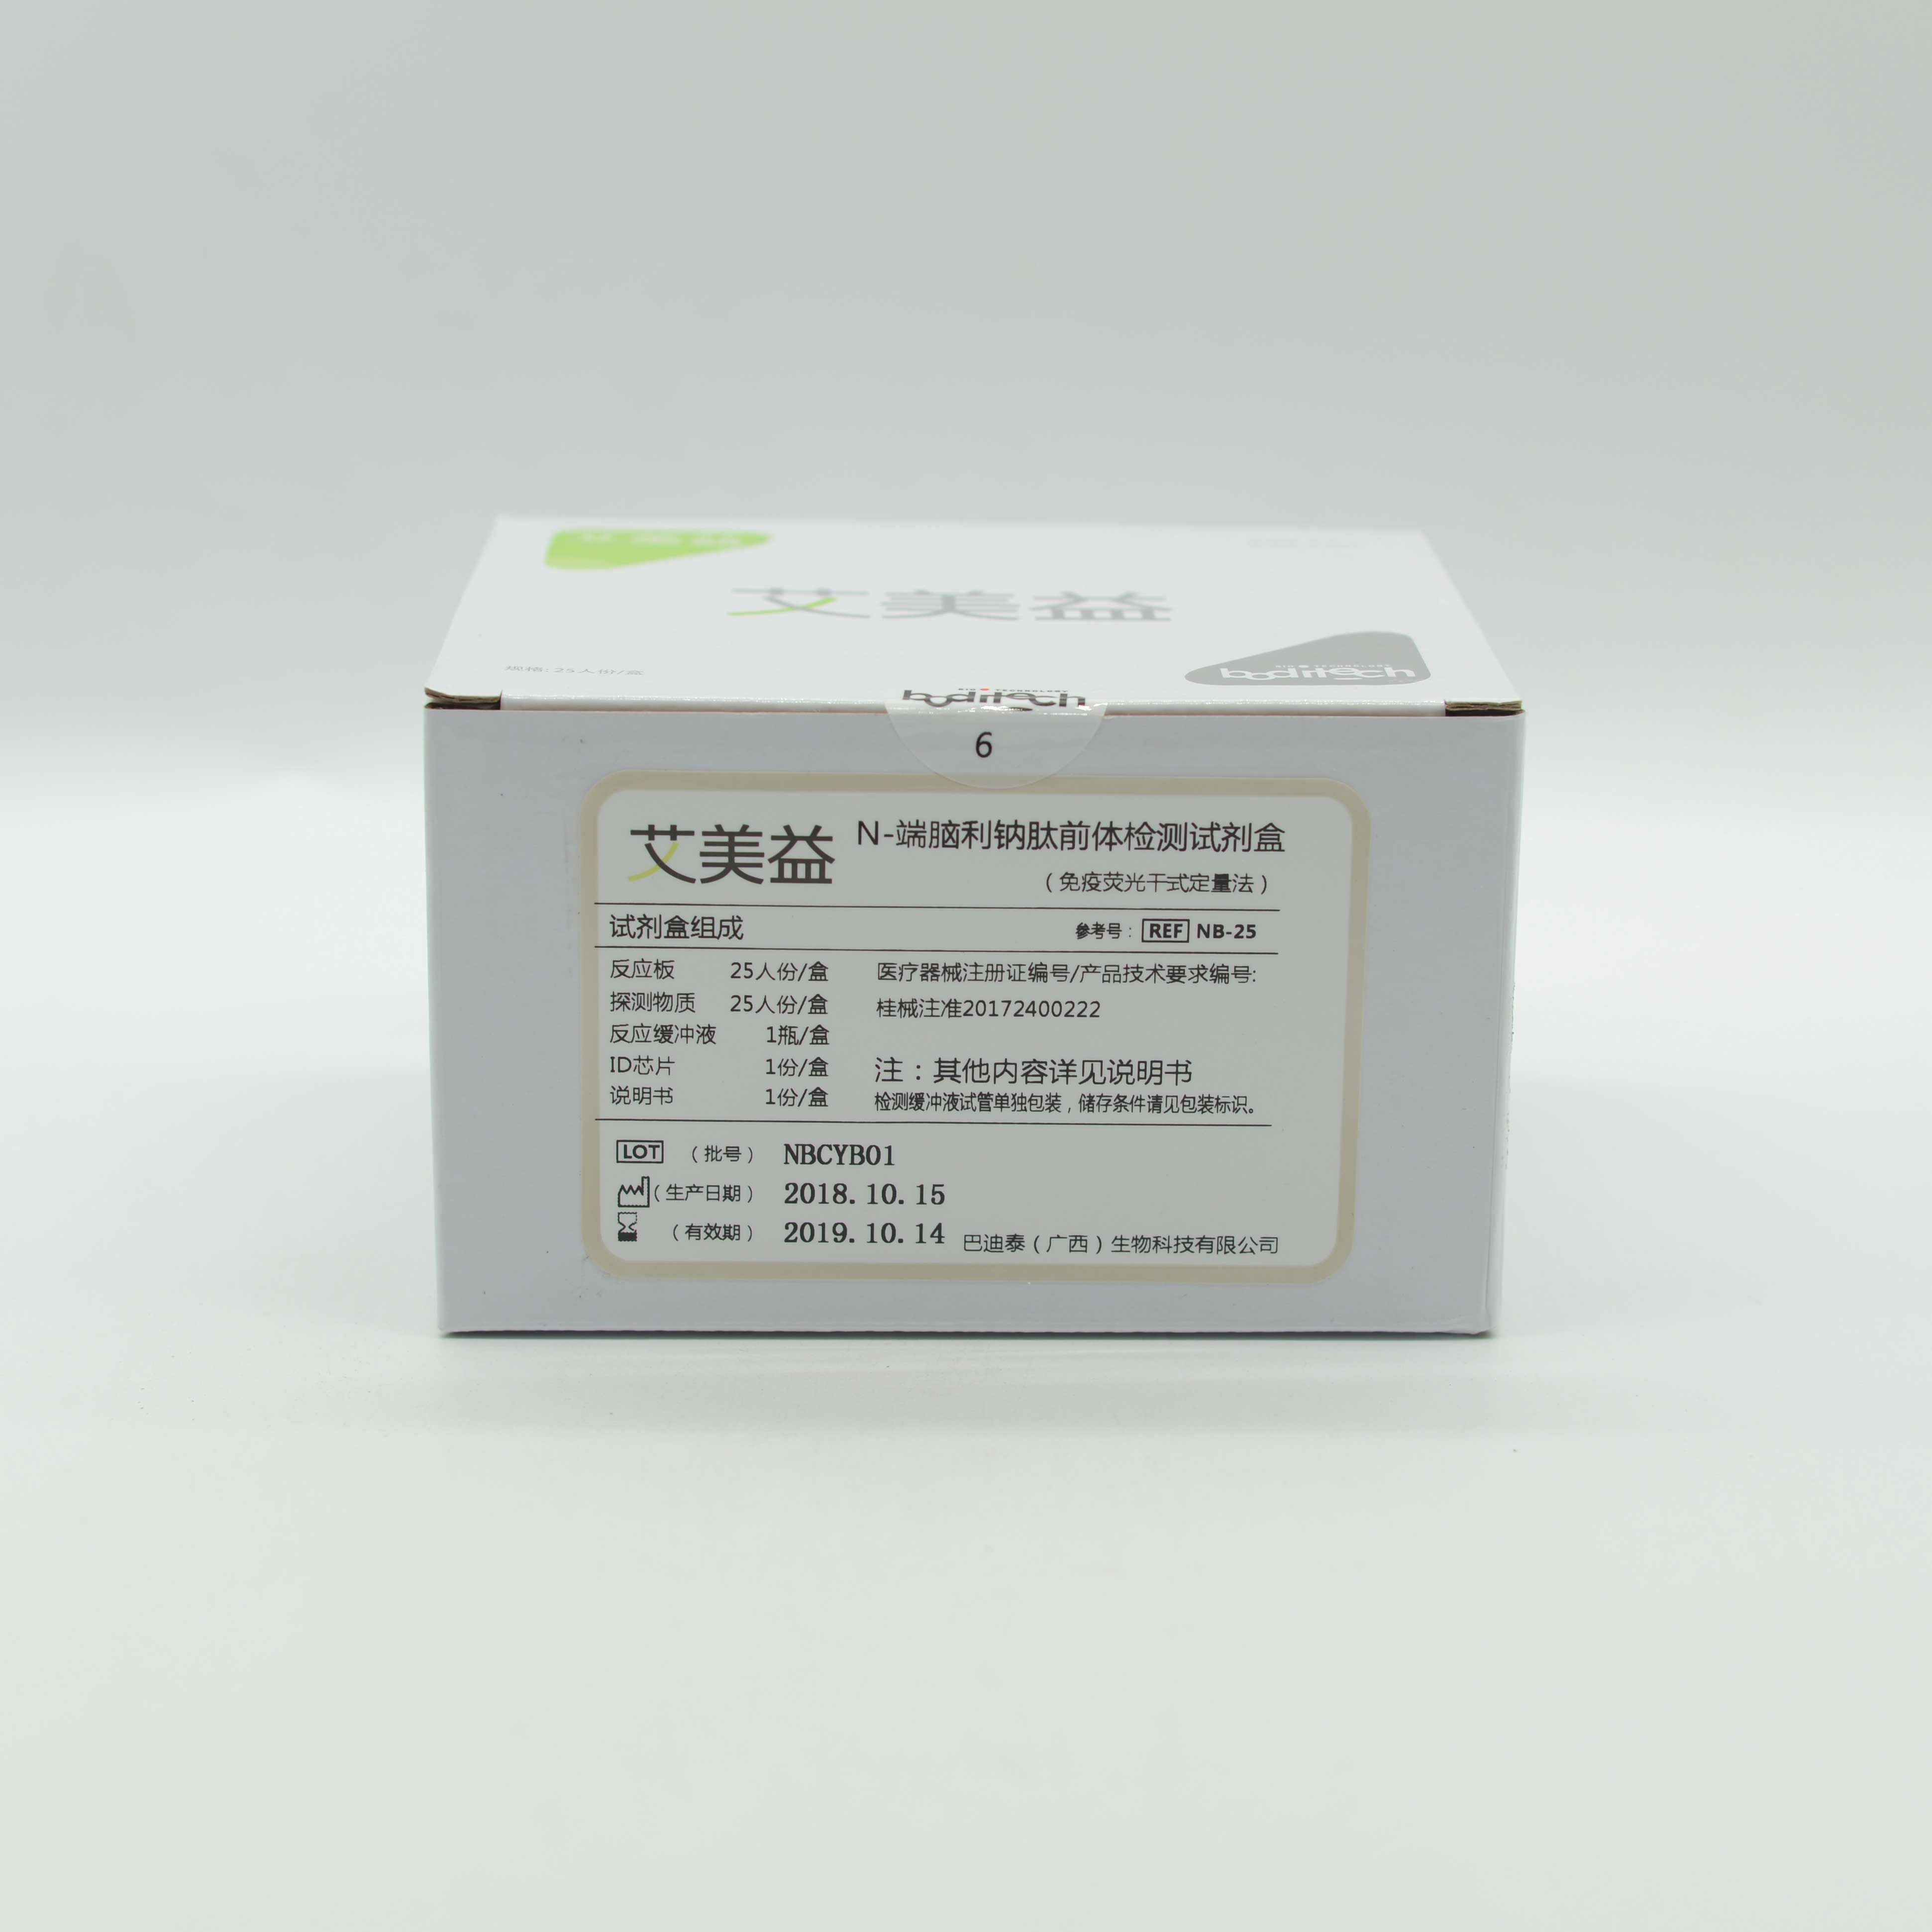 巴迪泰 N-端脑利钠肽前体检测试剂盒（免疫荧光干式定量法）招商